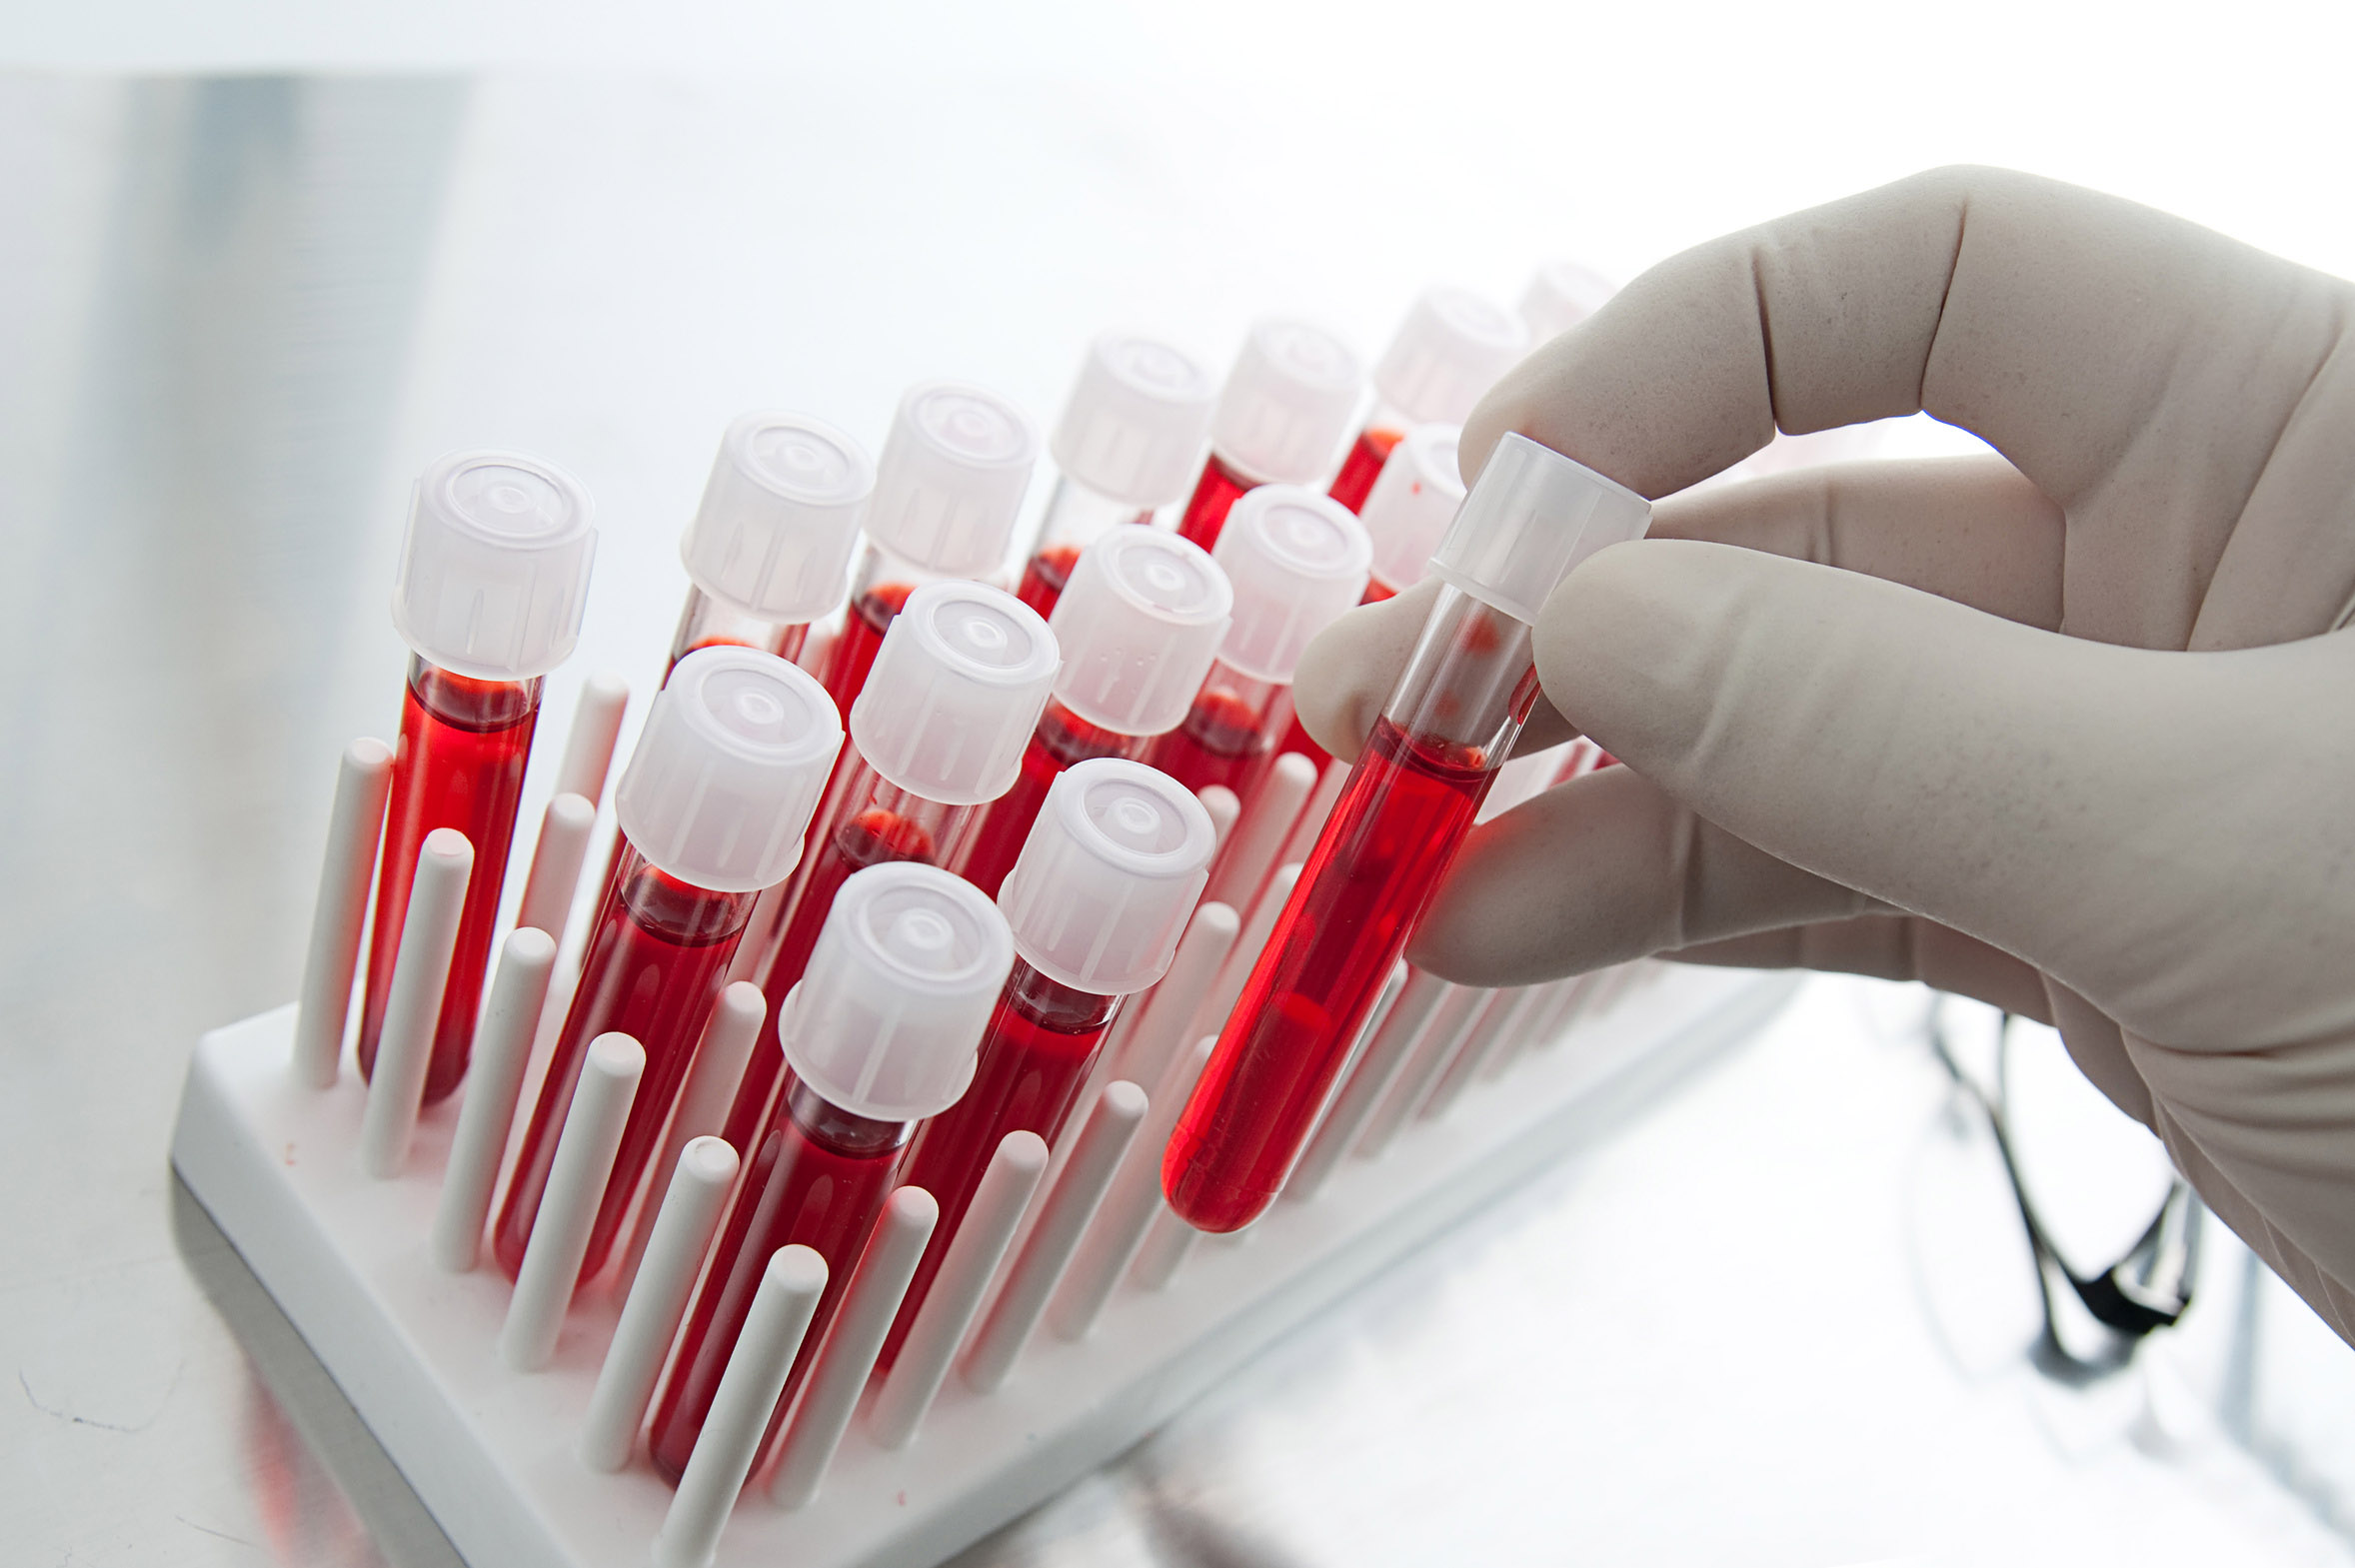 Μεγάλες ελπίδες από νέο τεστ αίματος που εντοπίζει τον καρκίνο πολύ αποτελεσματικά